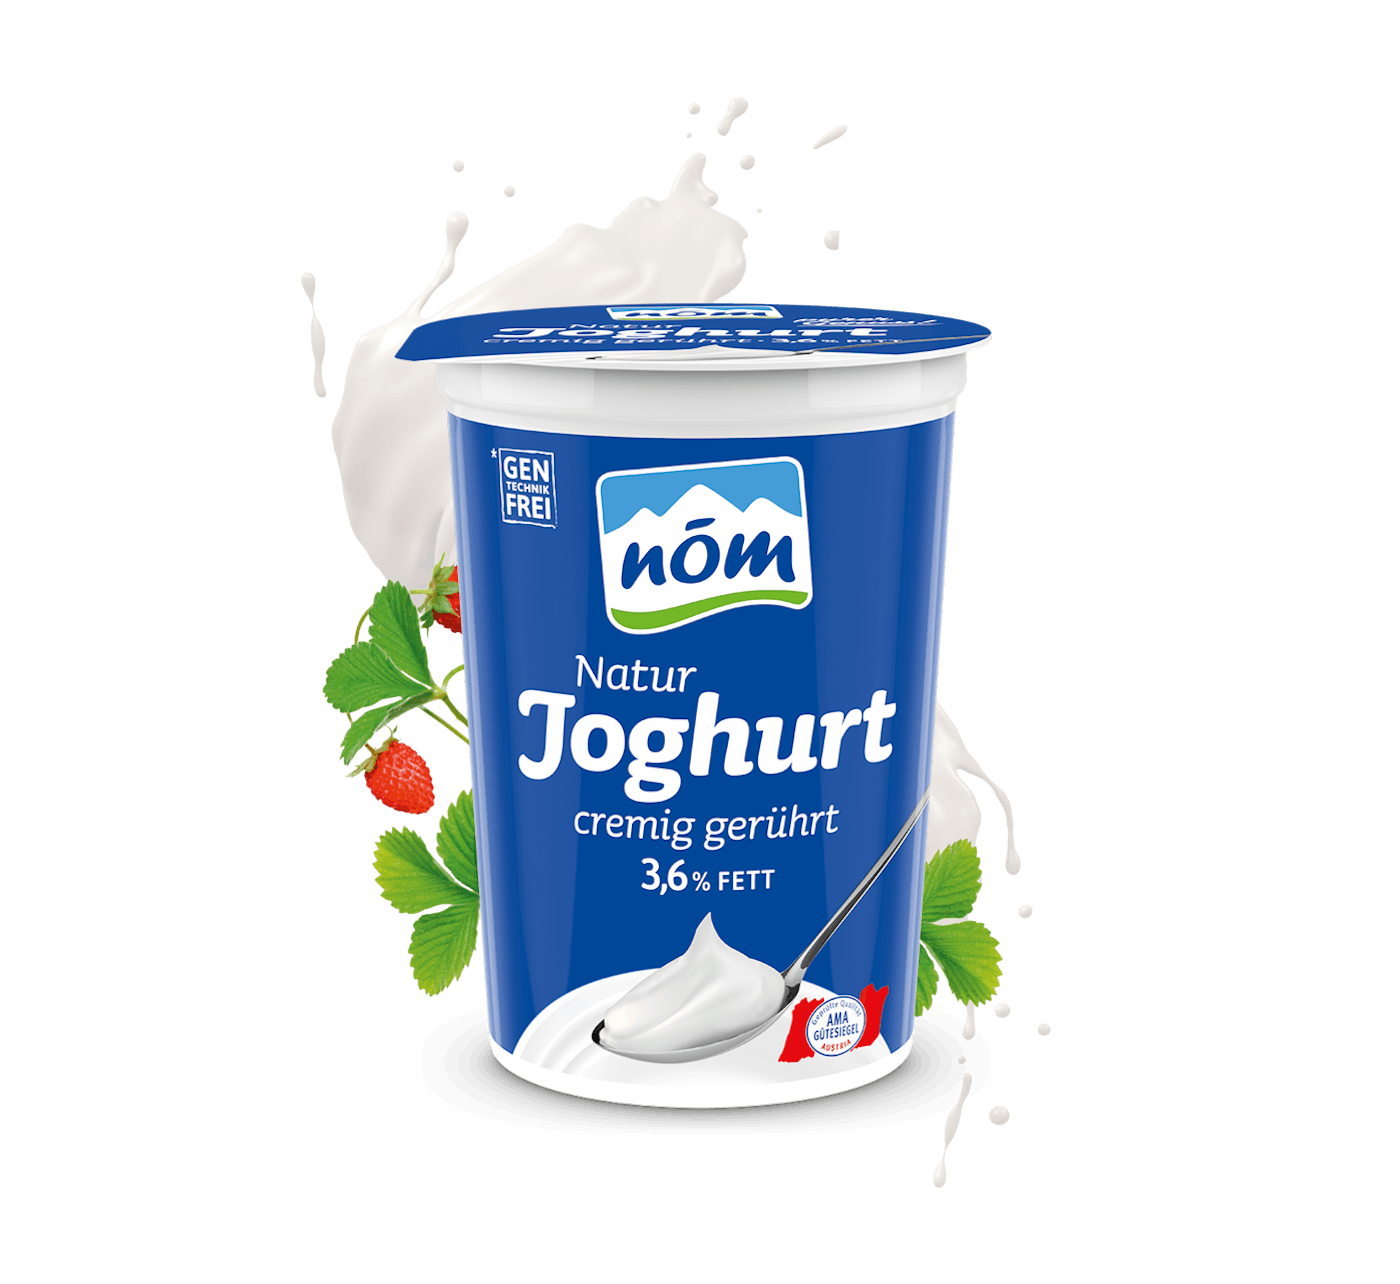 NÖM Natur Joghurt mit 3,6 % Fett im 500 g Becher mit Blumen